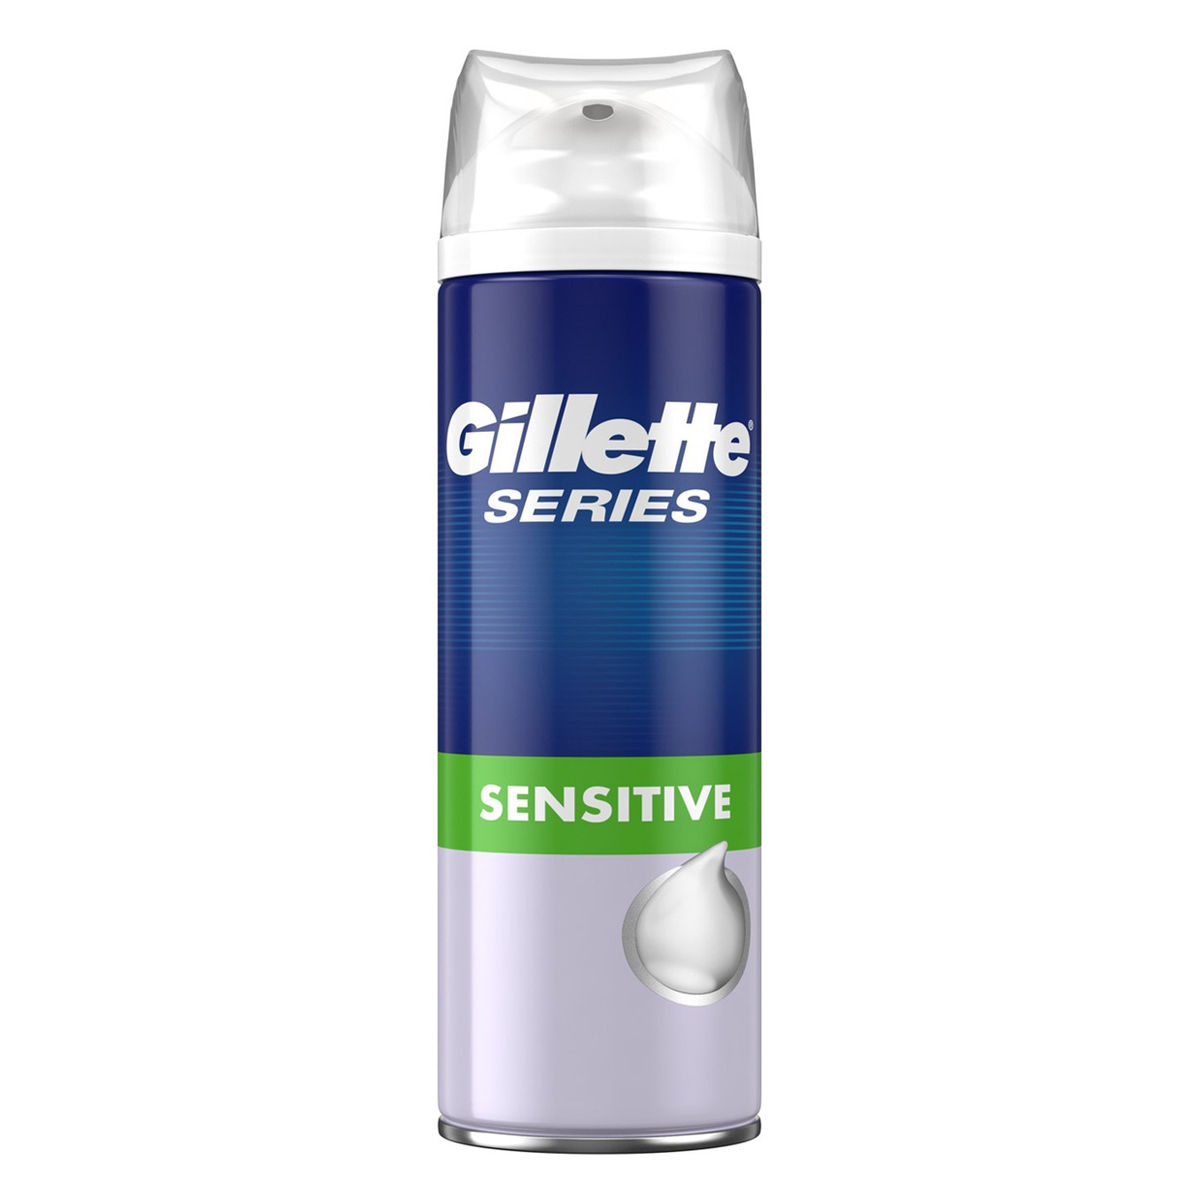 Buy Gillette Sensitive Shaving Foam, 300 ml Online